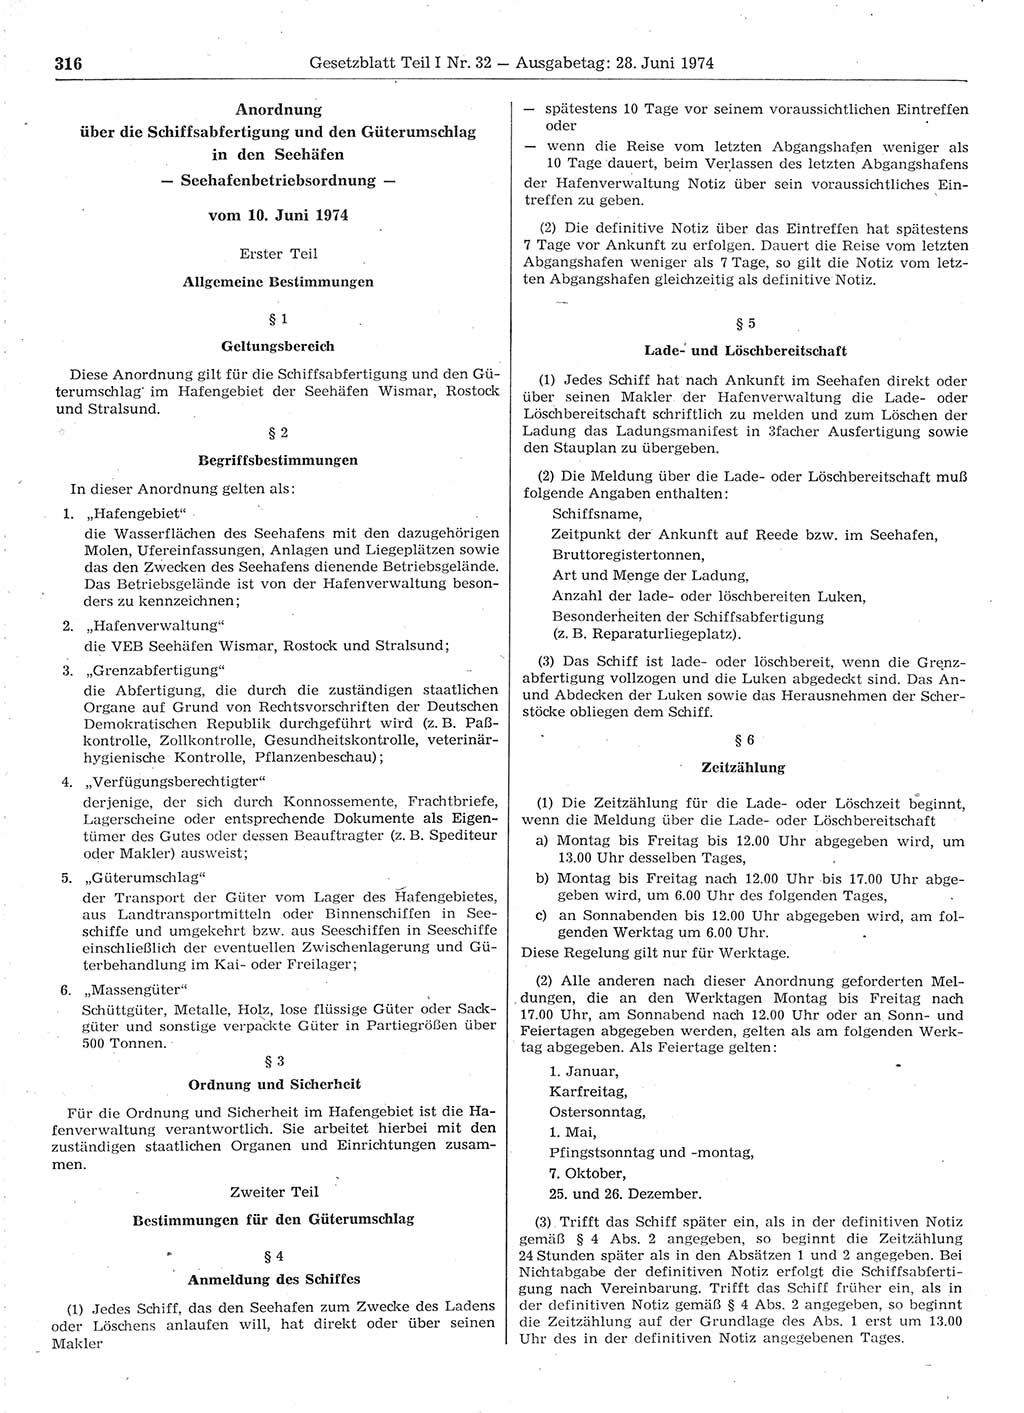 Gesetzblatt (GBl.) der Deutschen Demokratischen Republik (DDR) Teil Ⅰ 1974, Seite 316 (GBl. DDR Ⅰ 1974, S. 316)